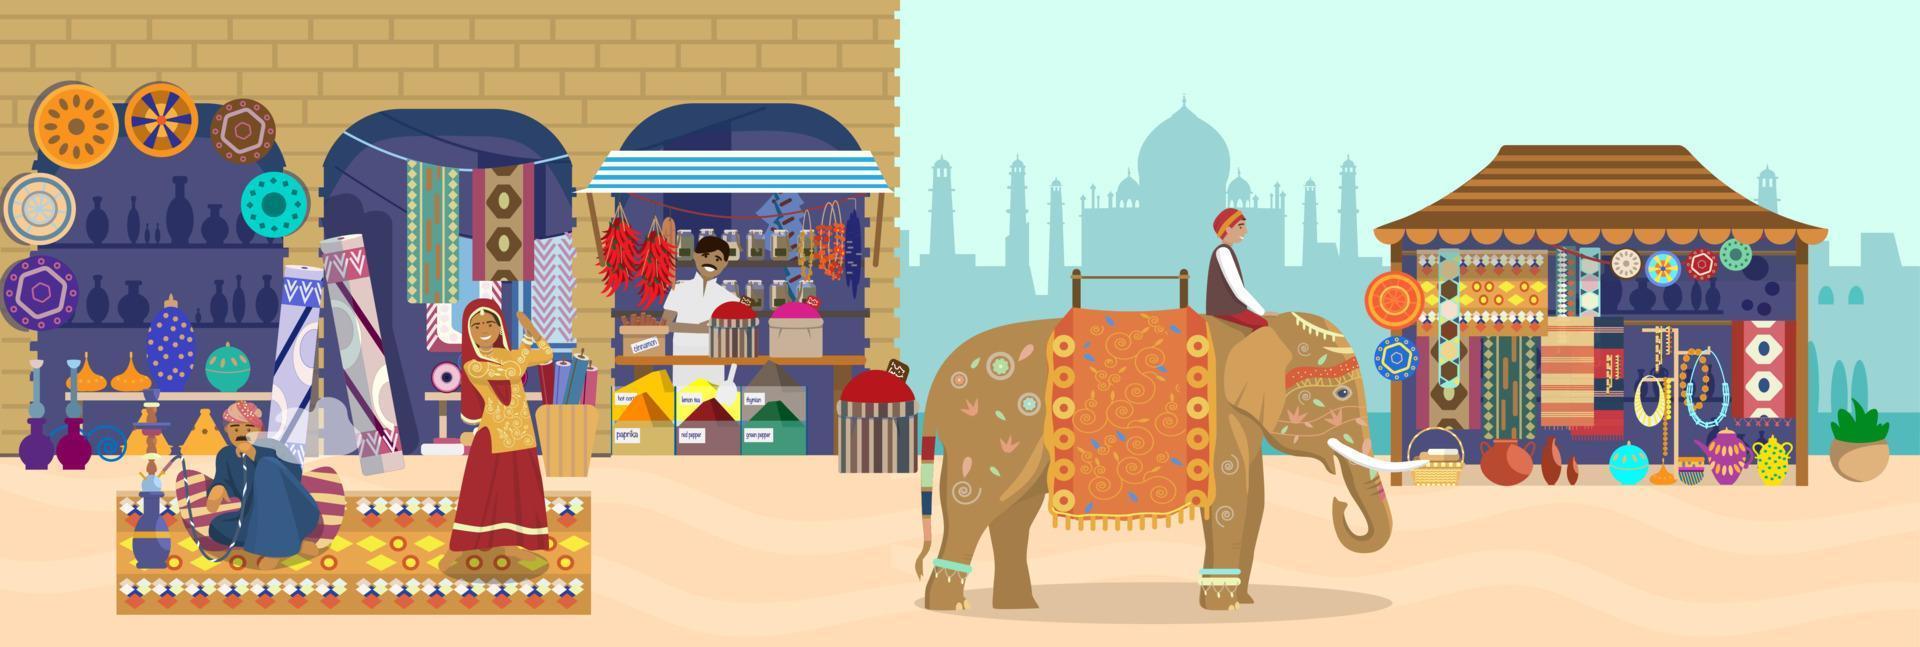 illustrazione vettoriale del mercato asiatico con diversi negozi e persone. cavaliere di elefanti, negozio di souvenir con silhouette di taj mahal, ceramiche, tappeti, tessuti, spezie, donna che balla, uomo che fuma narghilè.